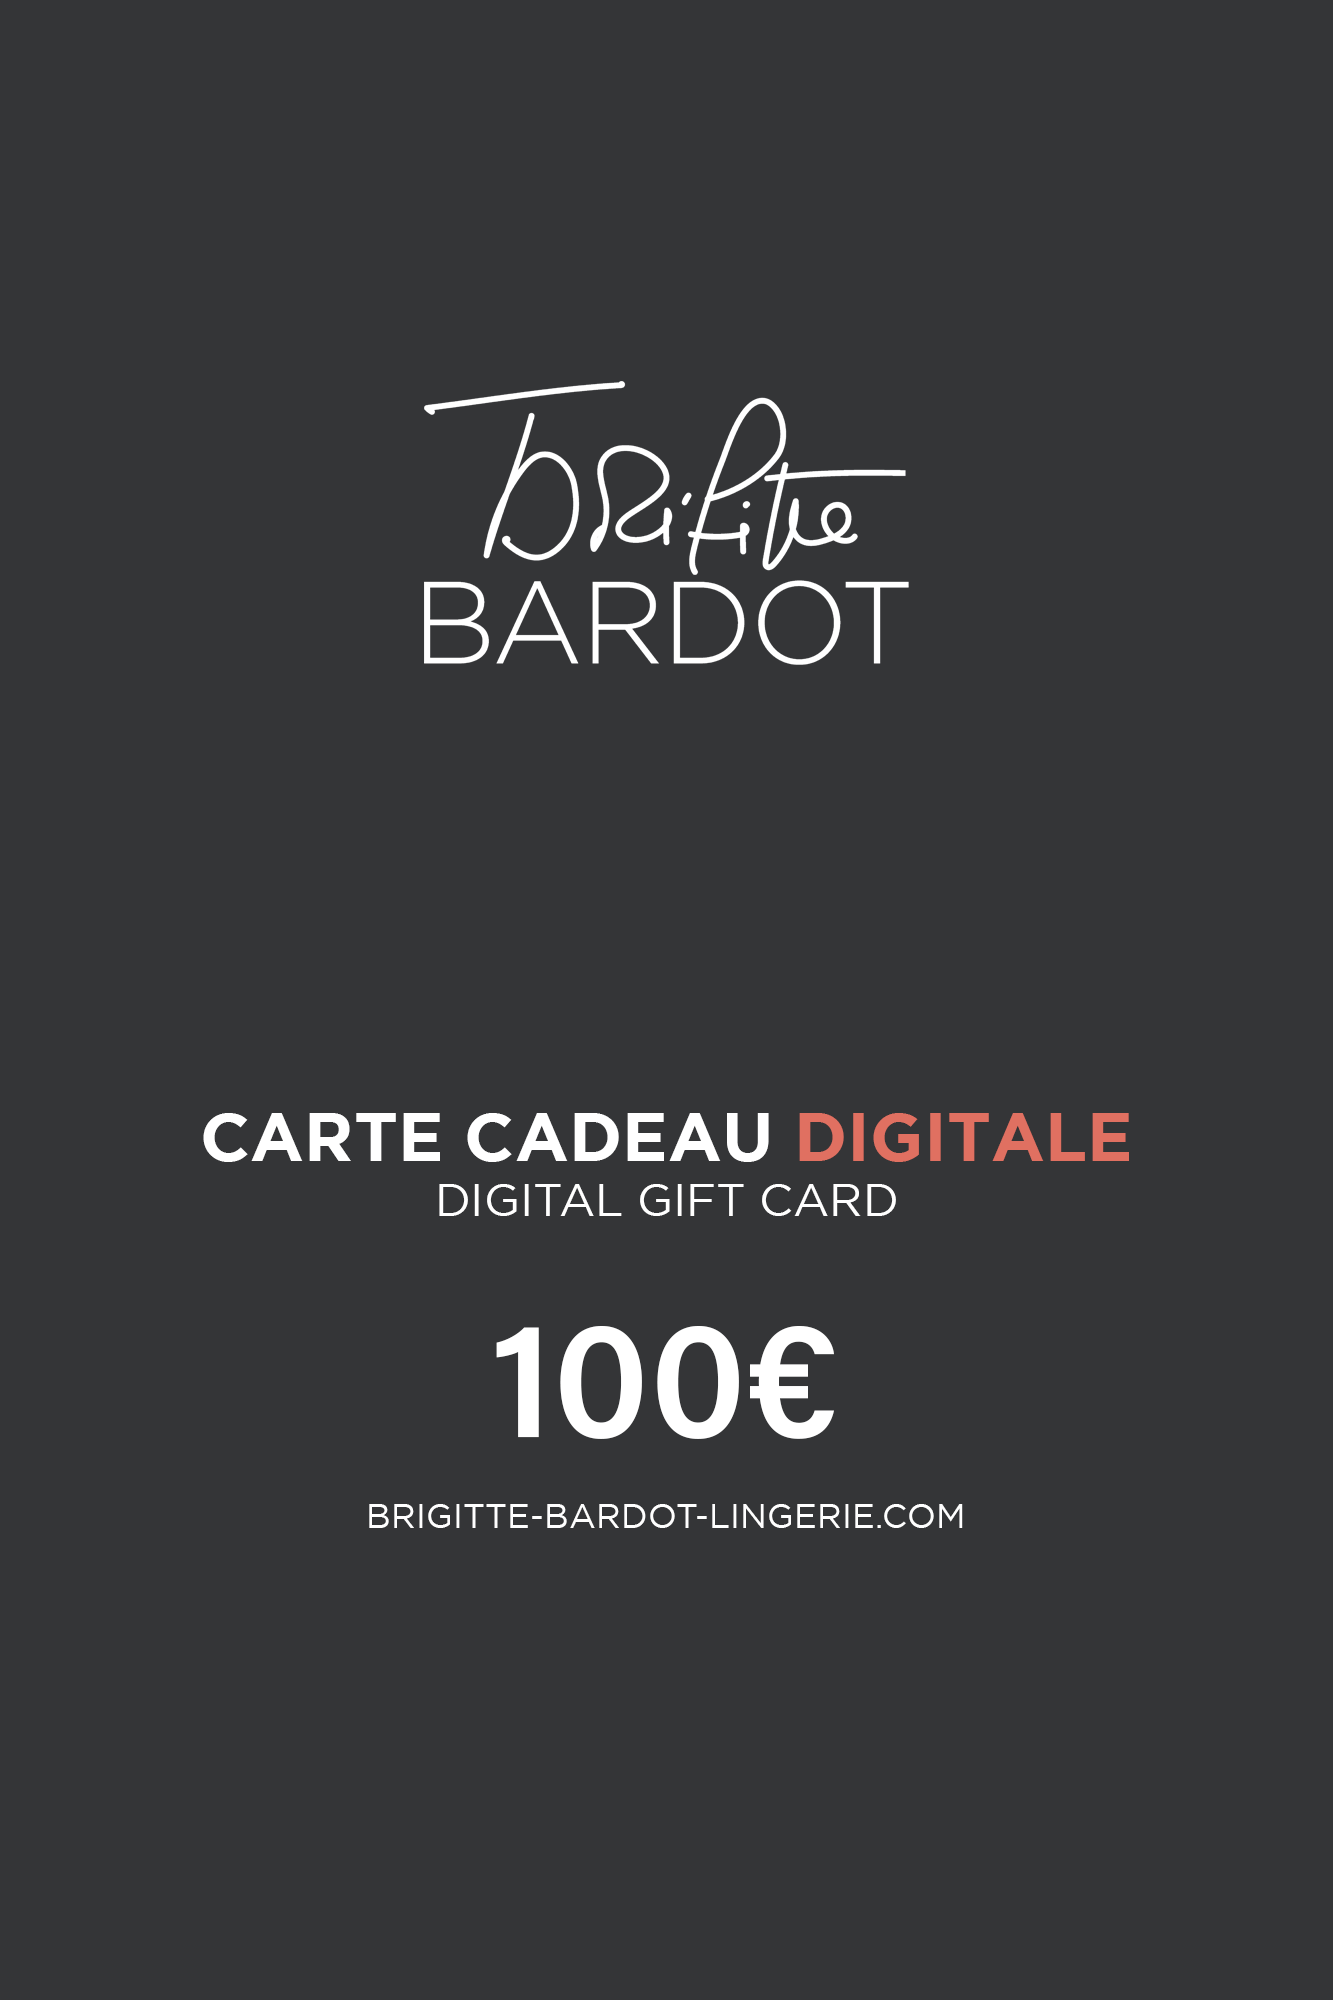 Carte cadeau digitale 100€